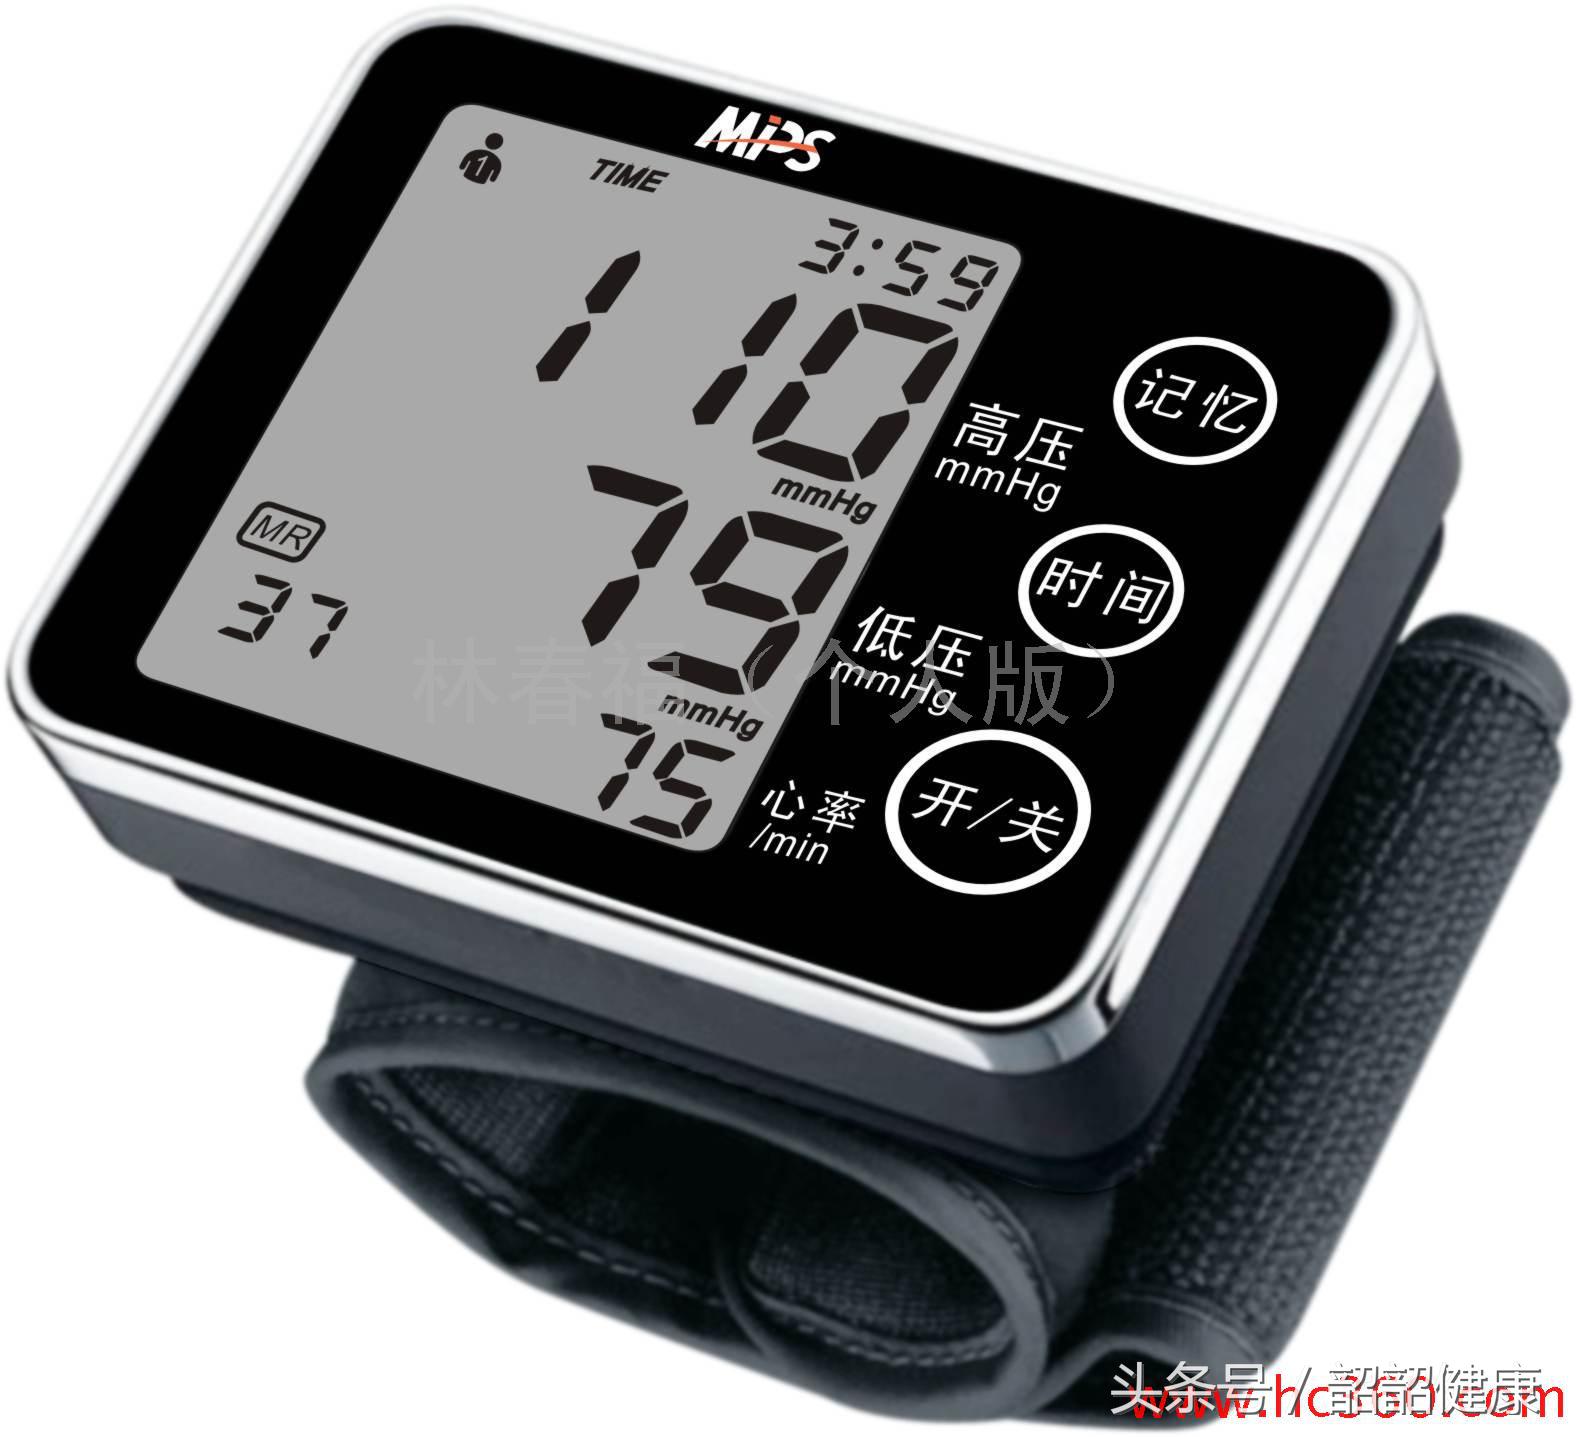 臂式电子血压计，在家里自己量血压的正确姿势